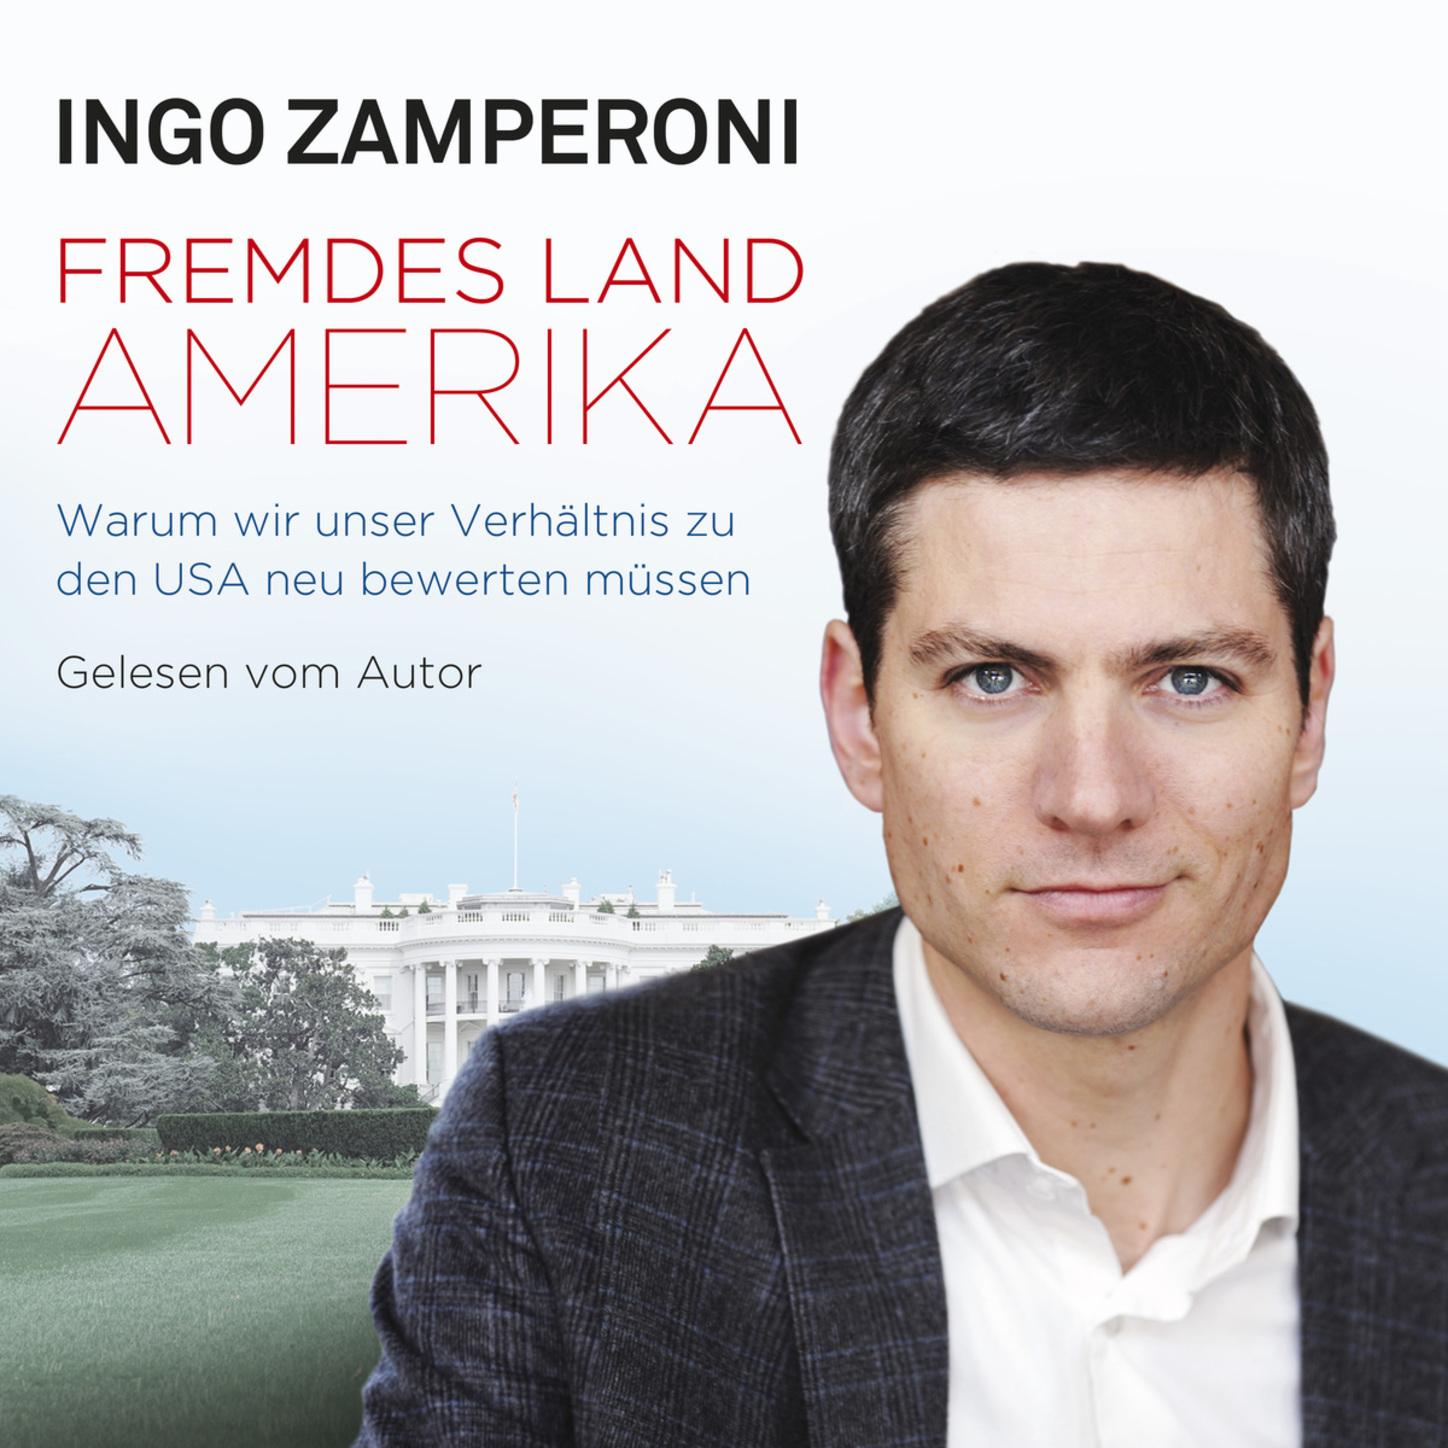 Ingo Zamperoni Fremdes Land Amerika. 